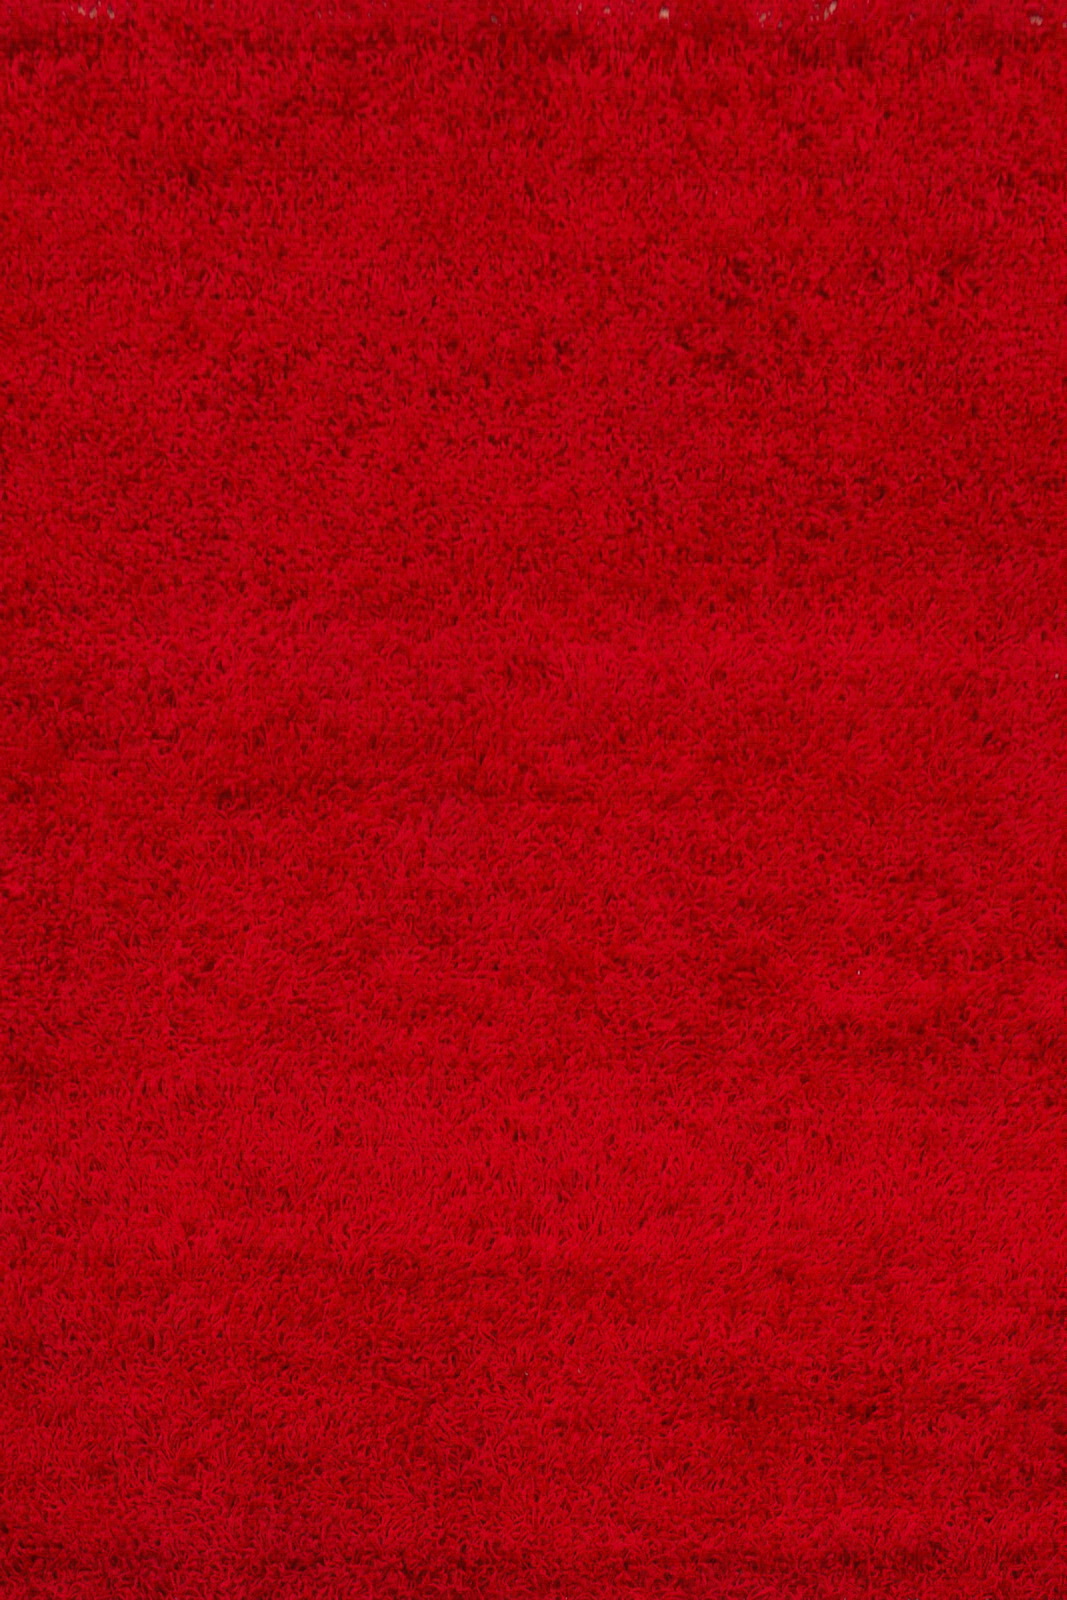 COVOARE - COVOR PRESTIGE 80*150 650 RED, comenziperpetuum.ro